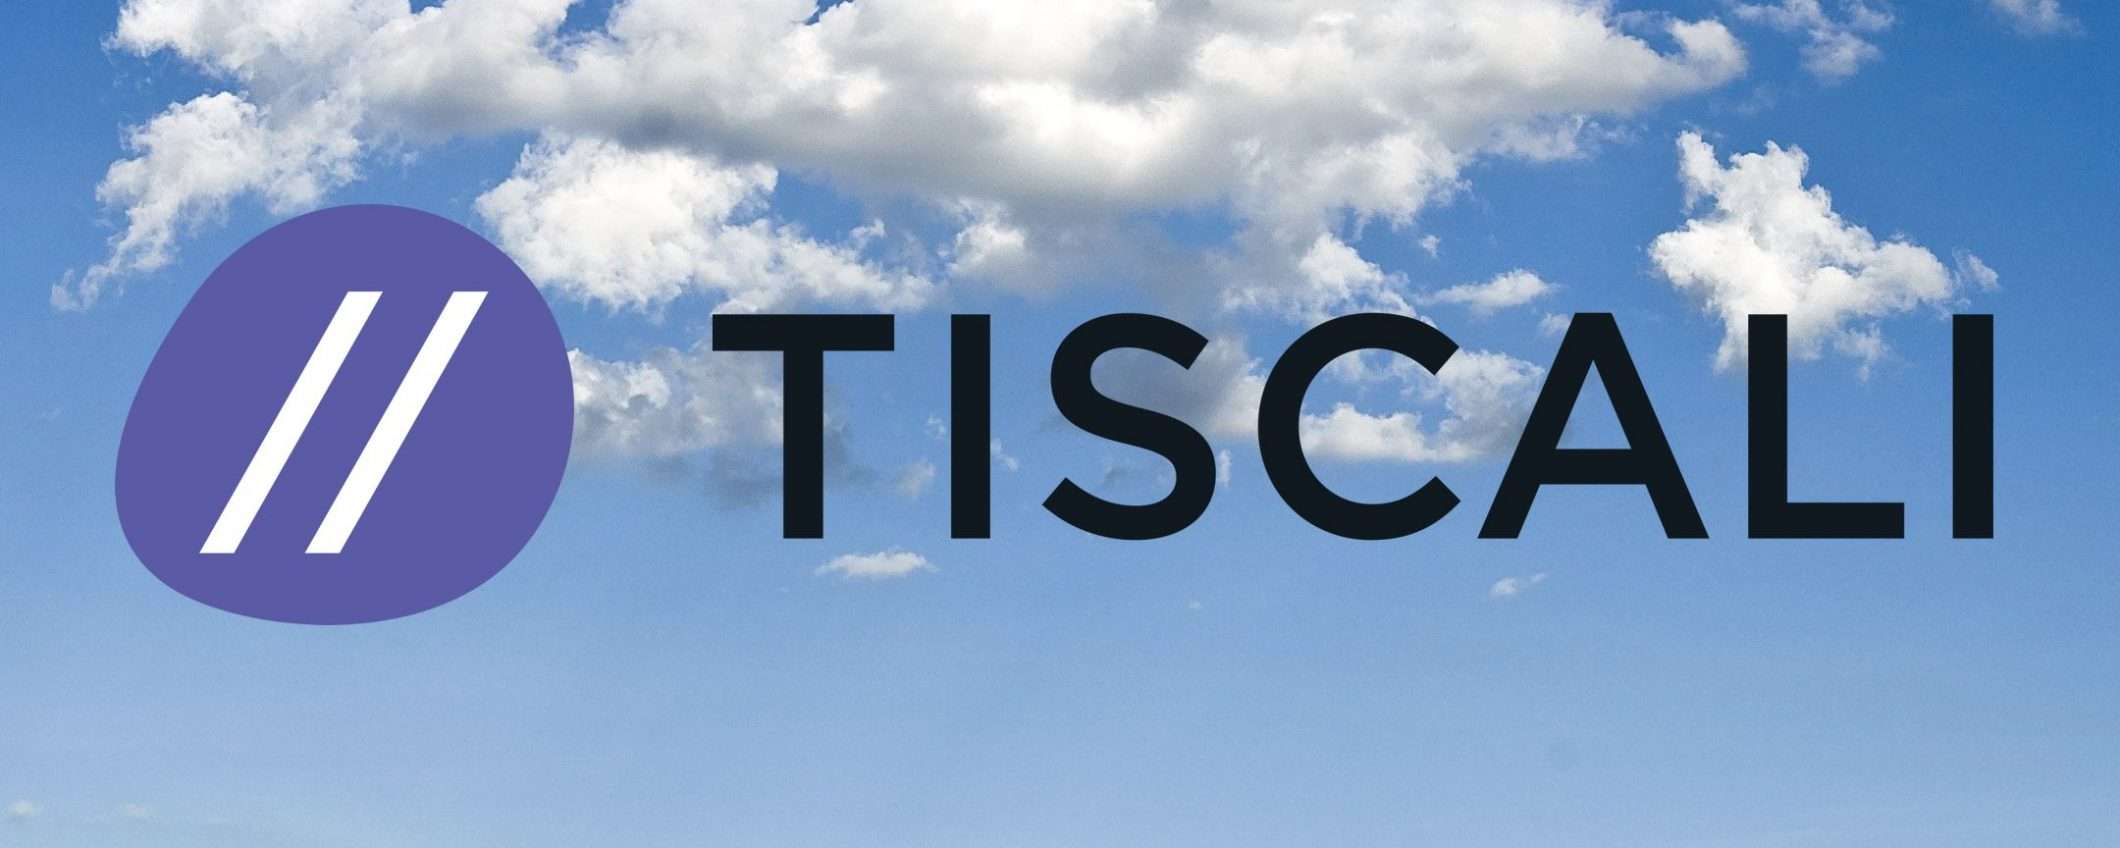 Tiscali, marketplace per il cloud aziendale